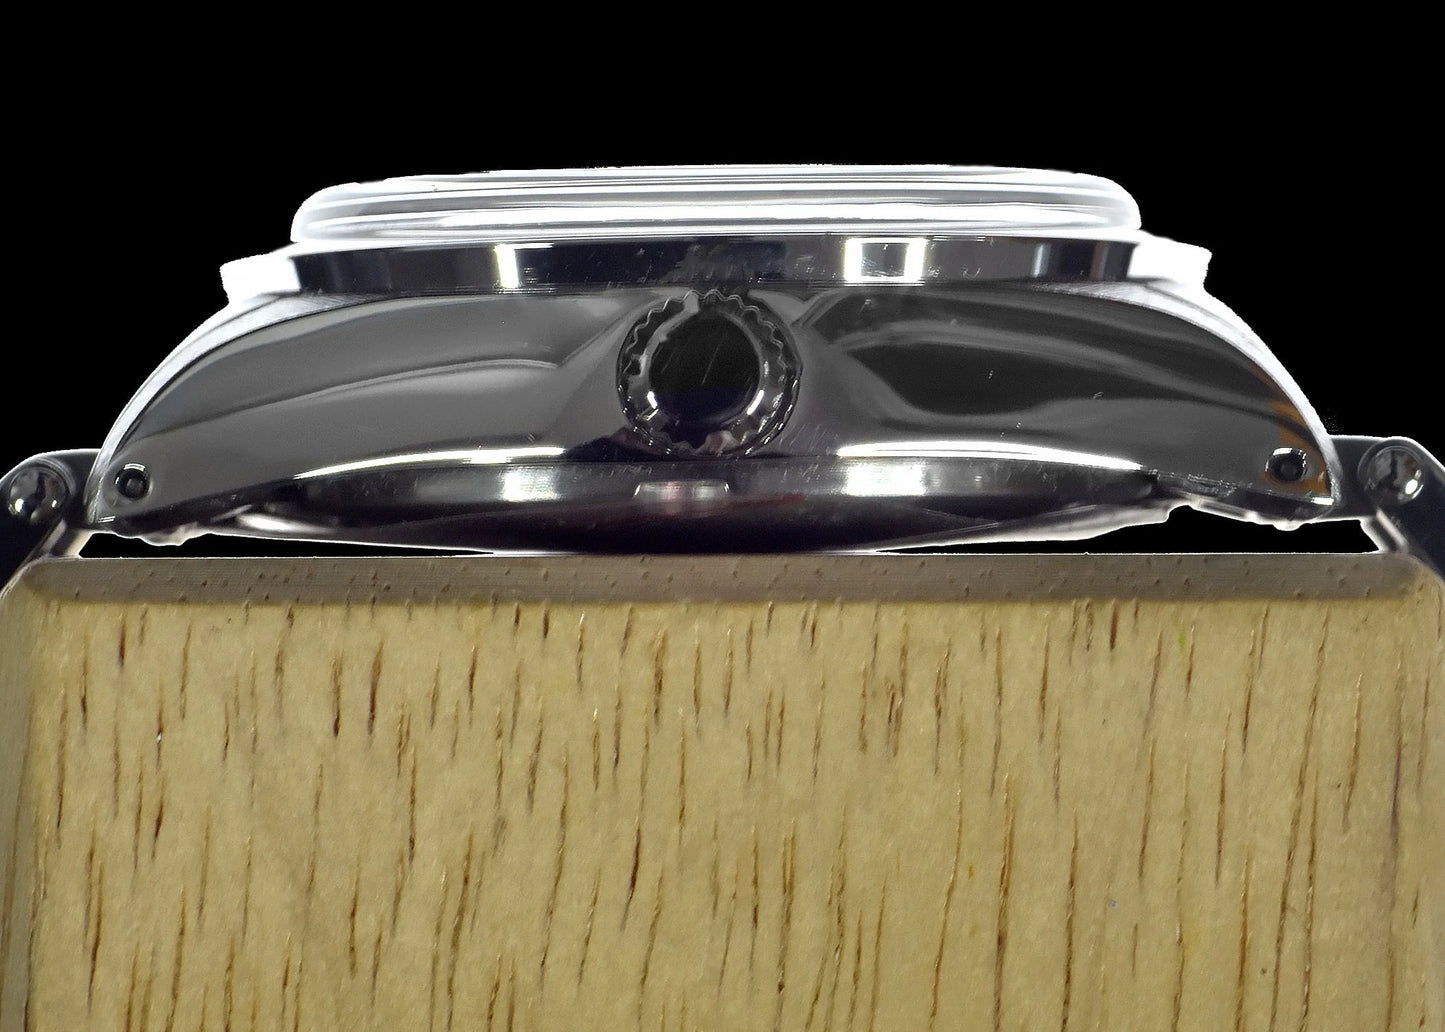 Military Watch Company 1950/1960 25 Juwelen Automatisch horloge met Retro Wijzerplaat en Saffierglas en 2x NATO horlogeband